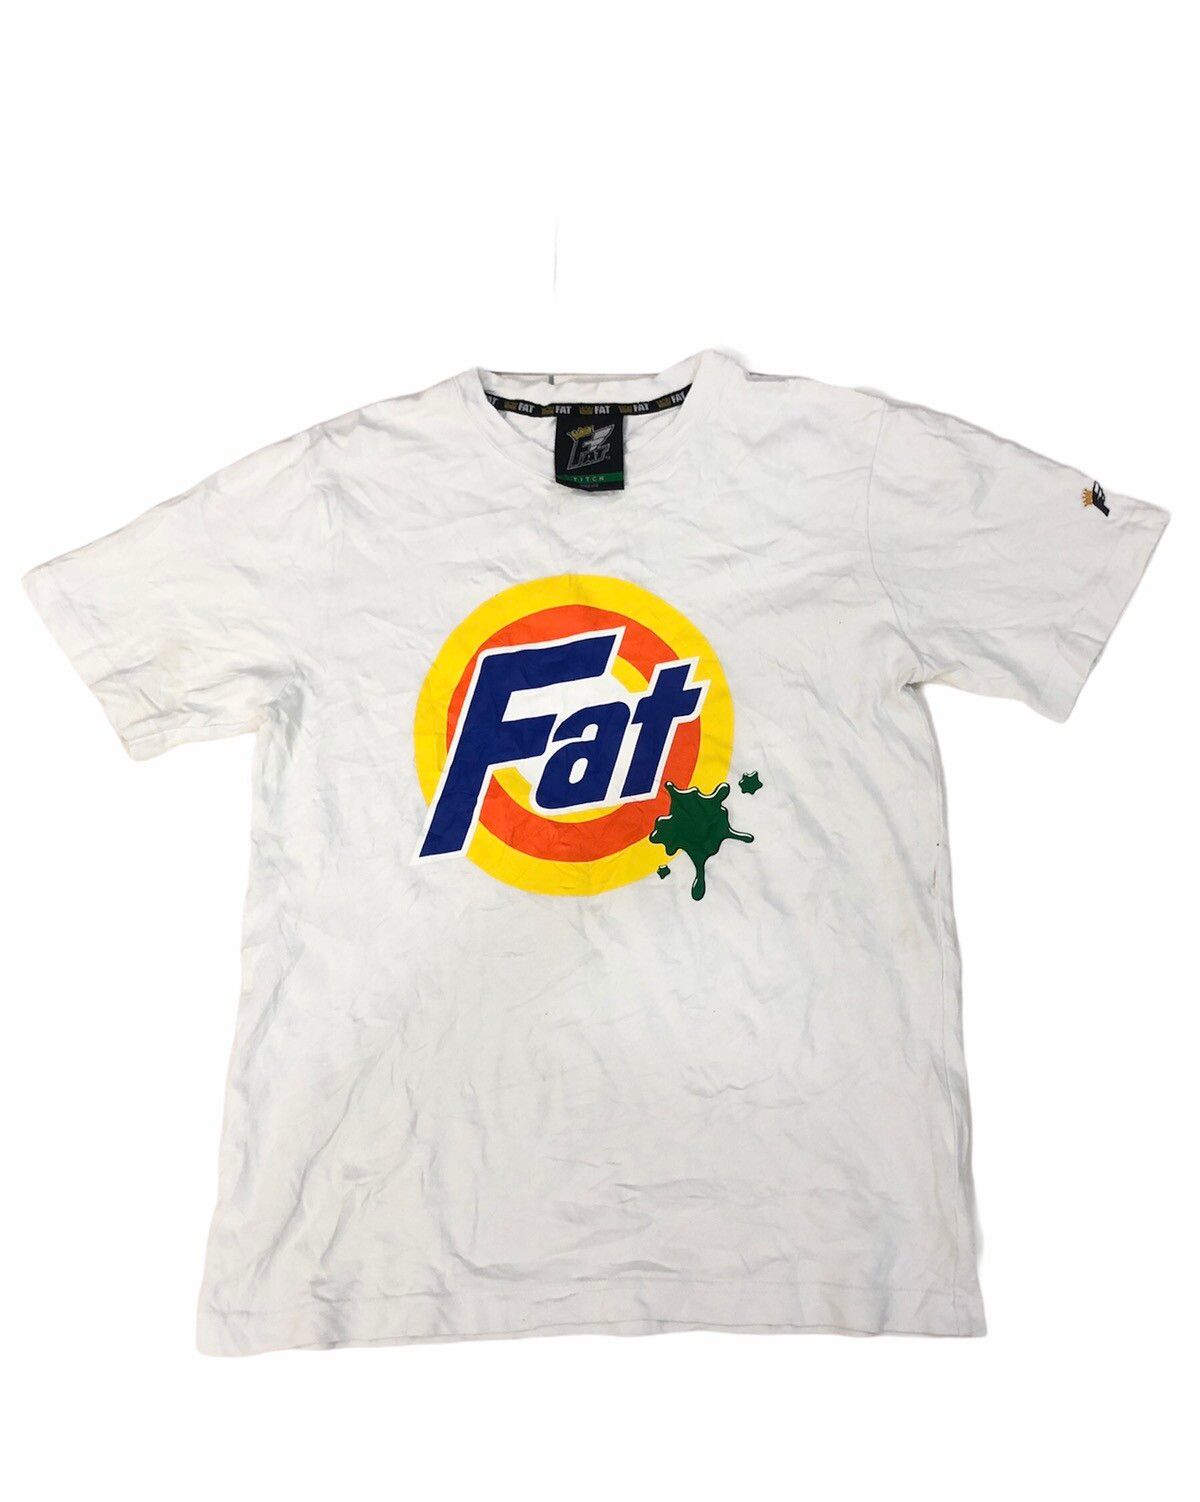 Fat Tokyo tshirt - 1